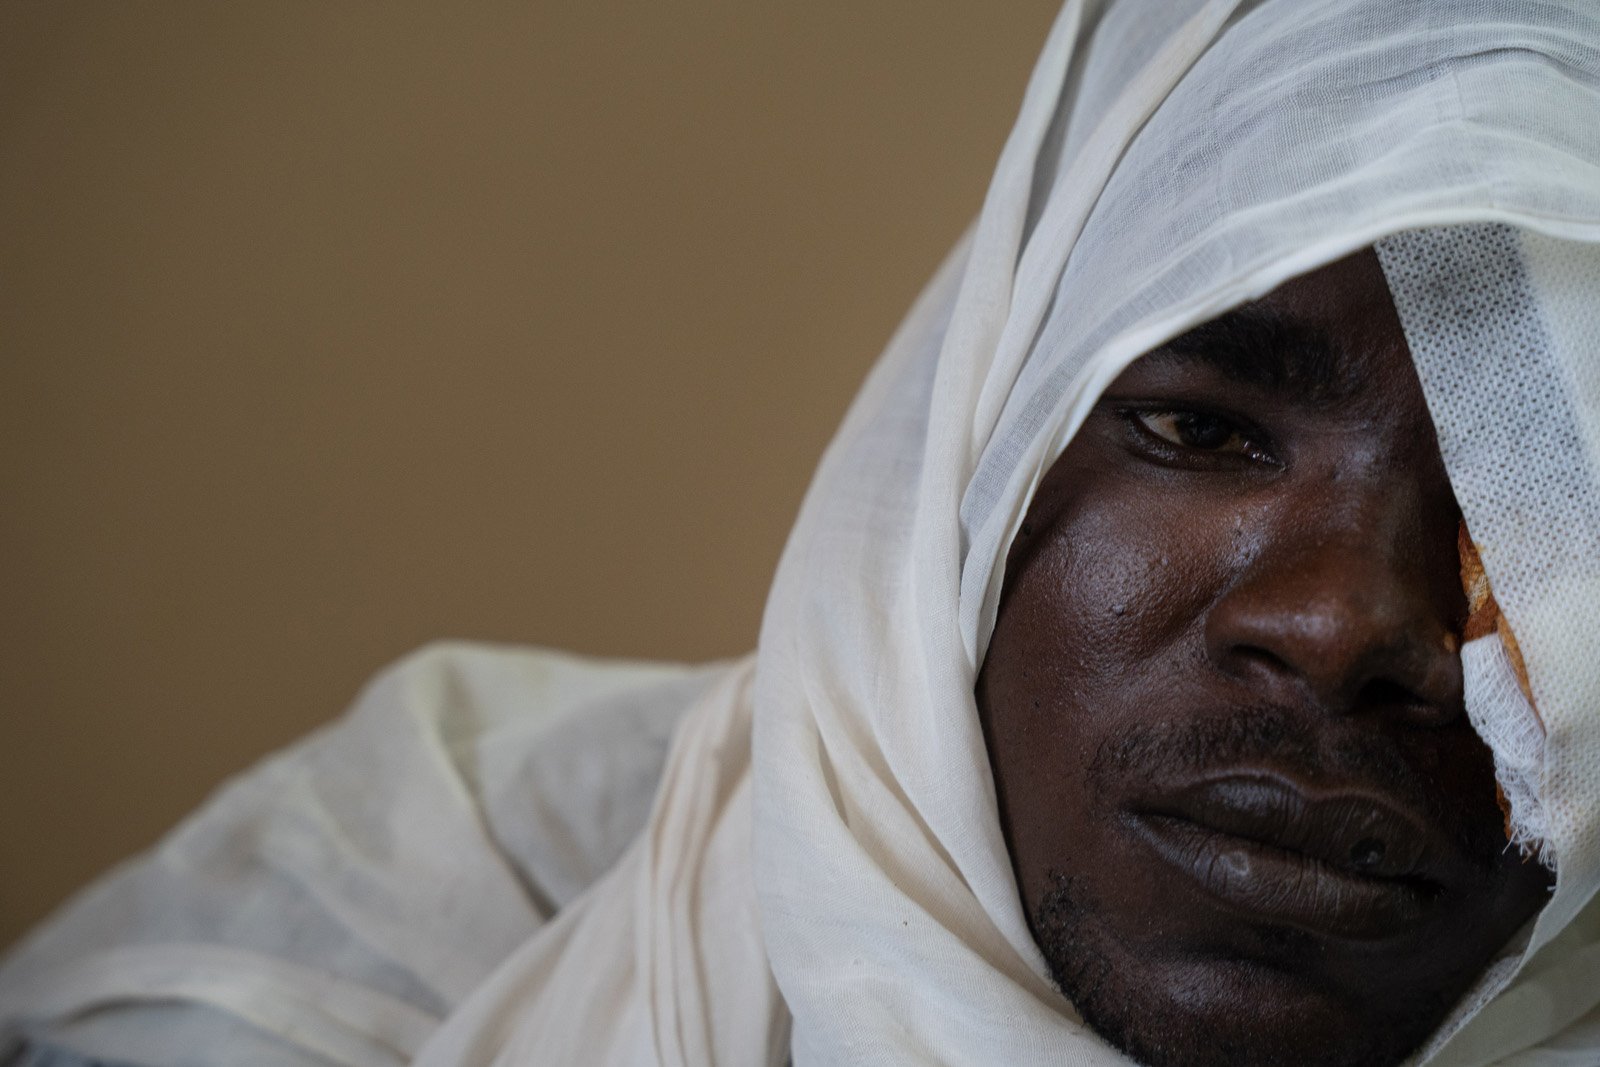  Osman Khatir, membre d'une tribu africaine, est hospitalisé à l'hôpital de Geneina après avoir recu une balle dans la tête lors d'une attaque de milices arabes dans les Jebel Moon. Geneina, 8 mars 2022 